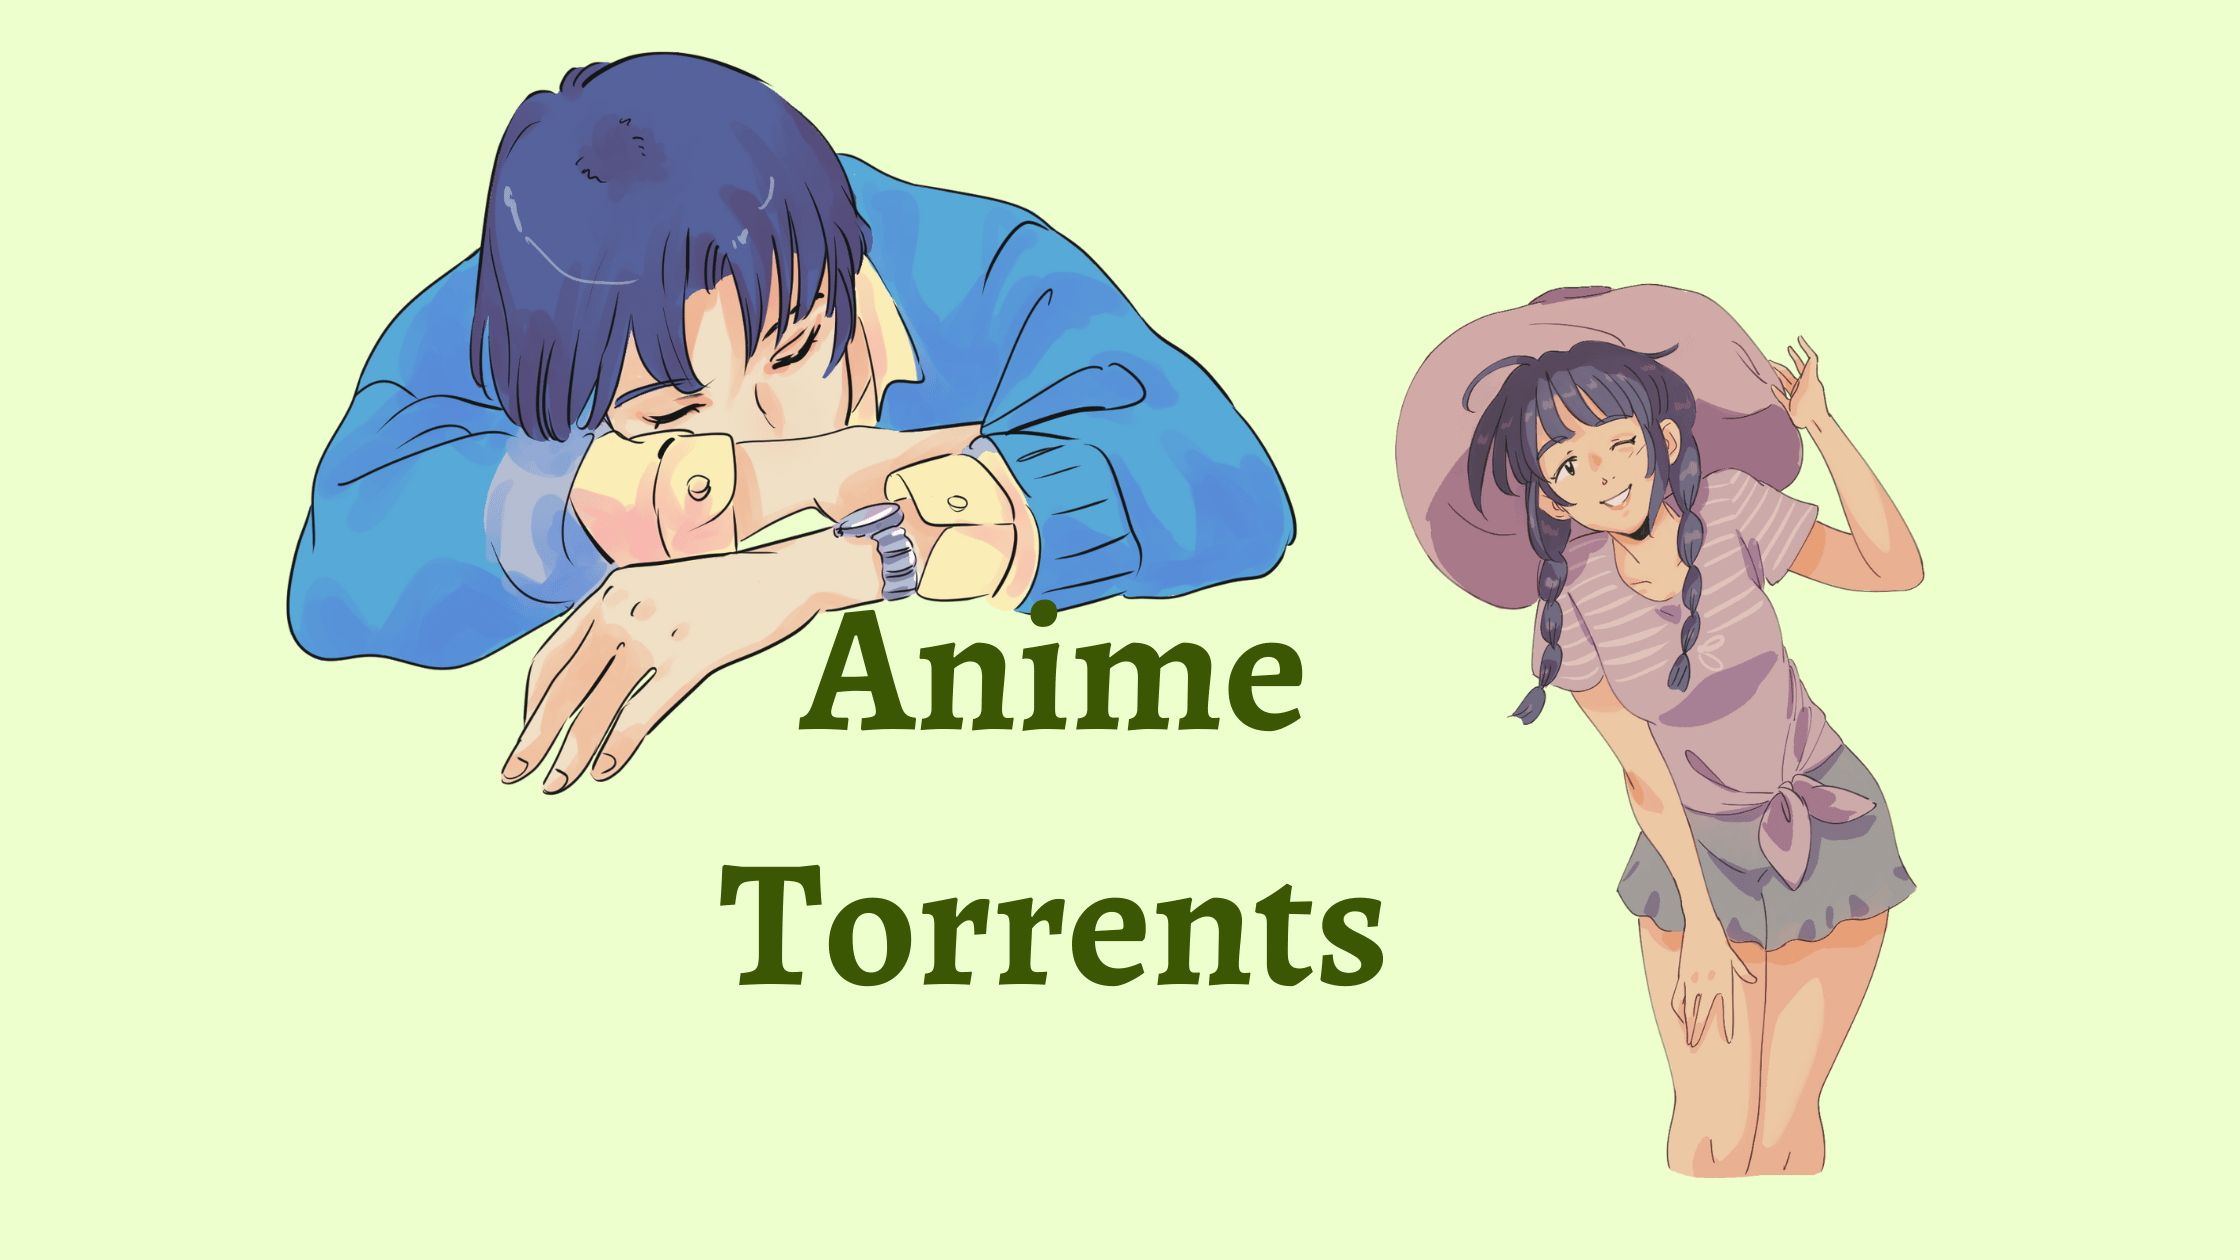 AnimeTorrents